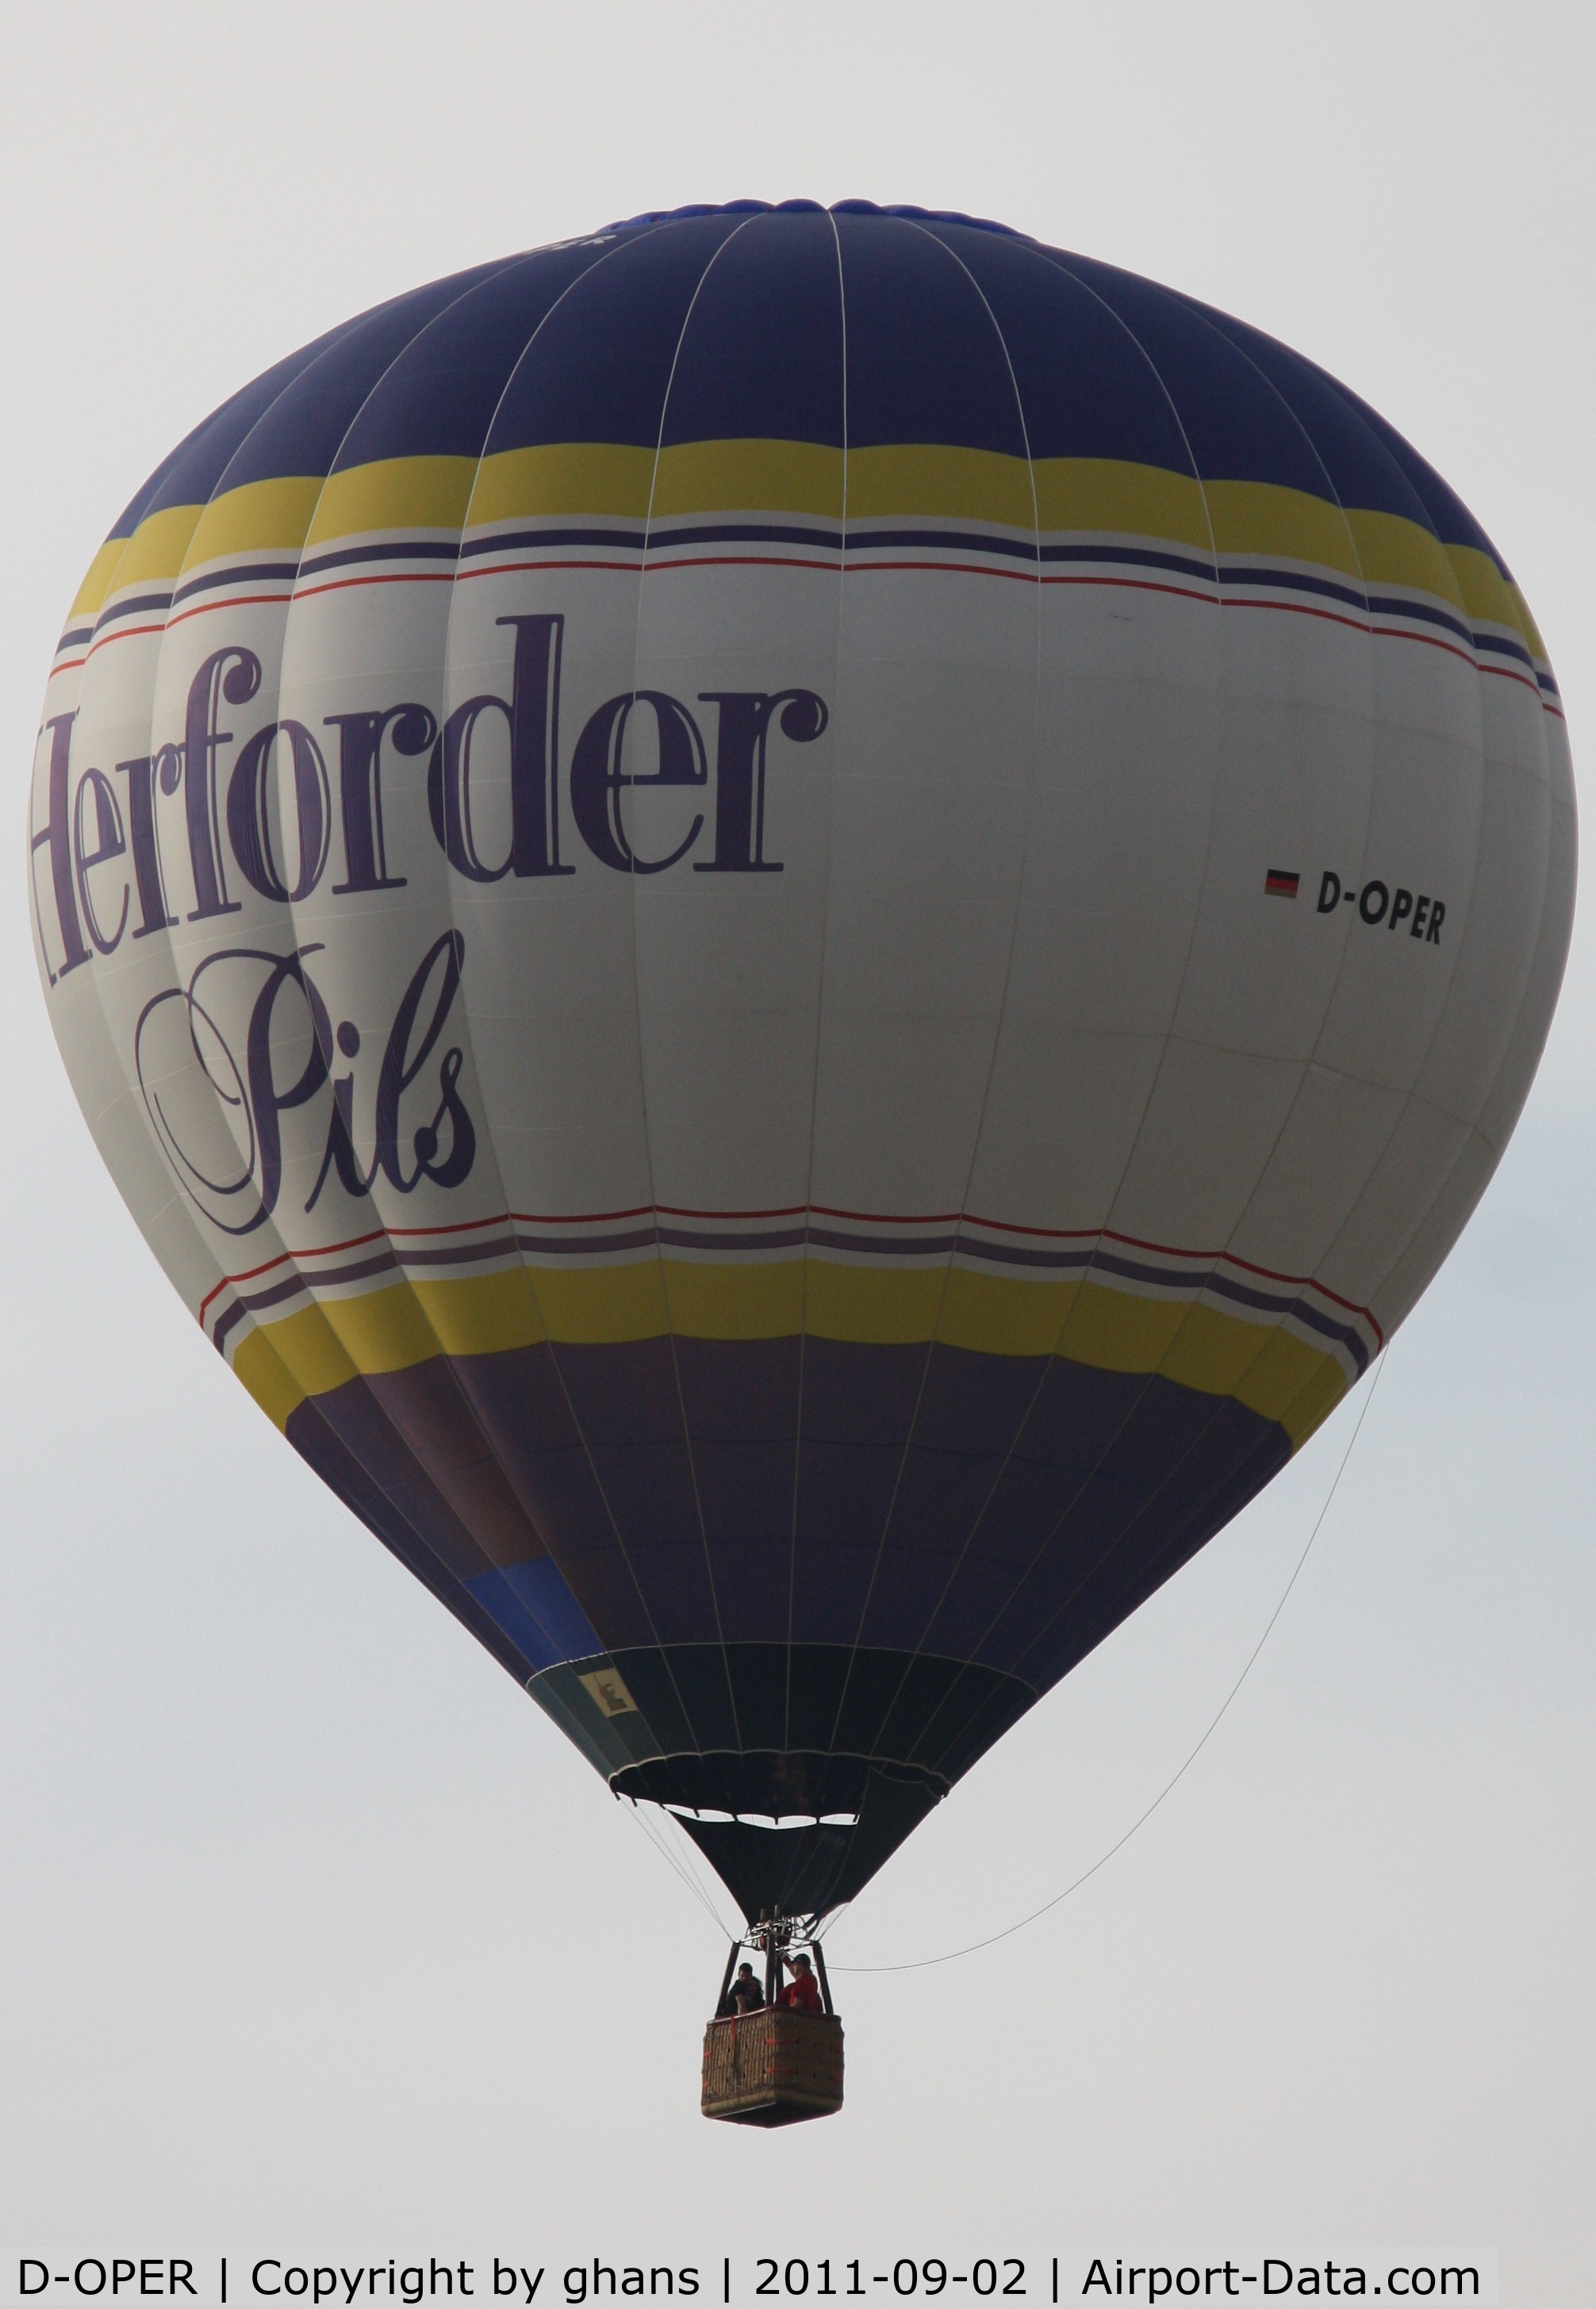 D-OPER, 2000 Schroeder Fire Balloons G34/24 C/N 822, WIM 2011
'Herforder Pils'